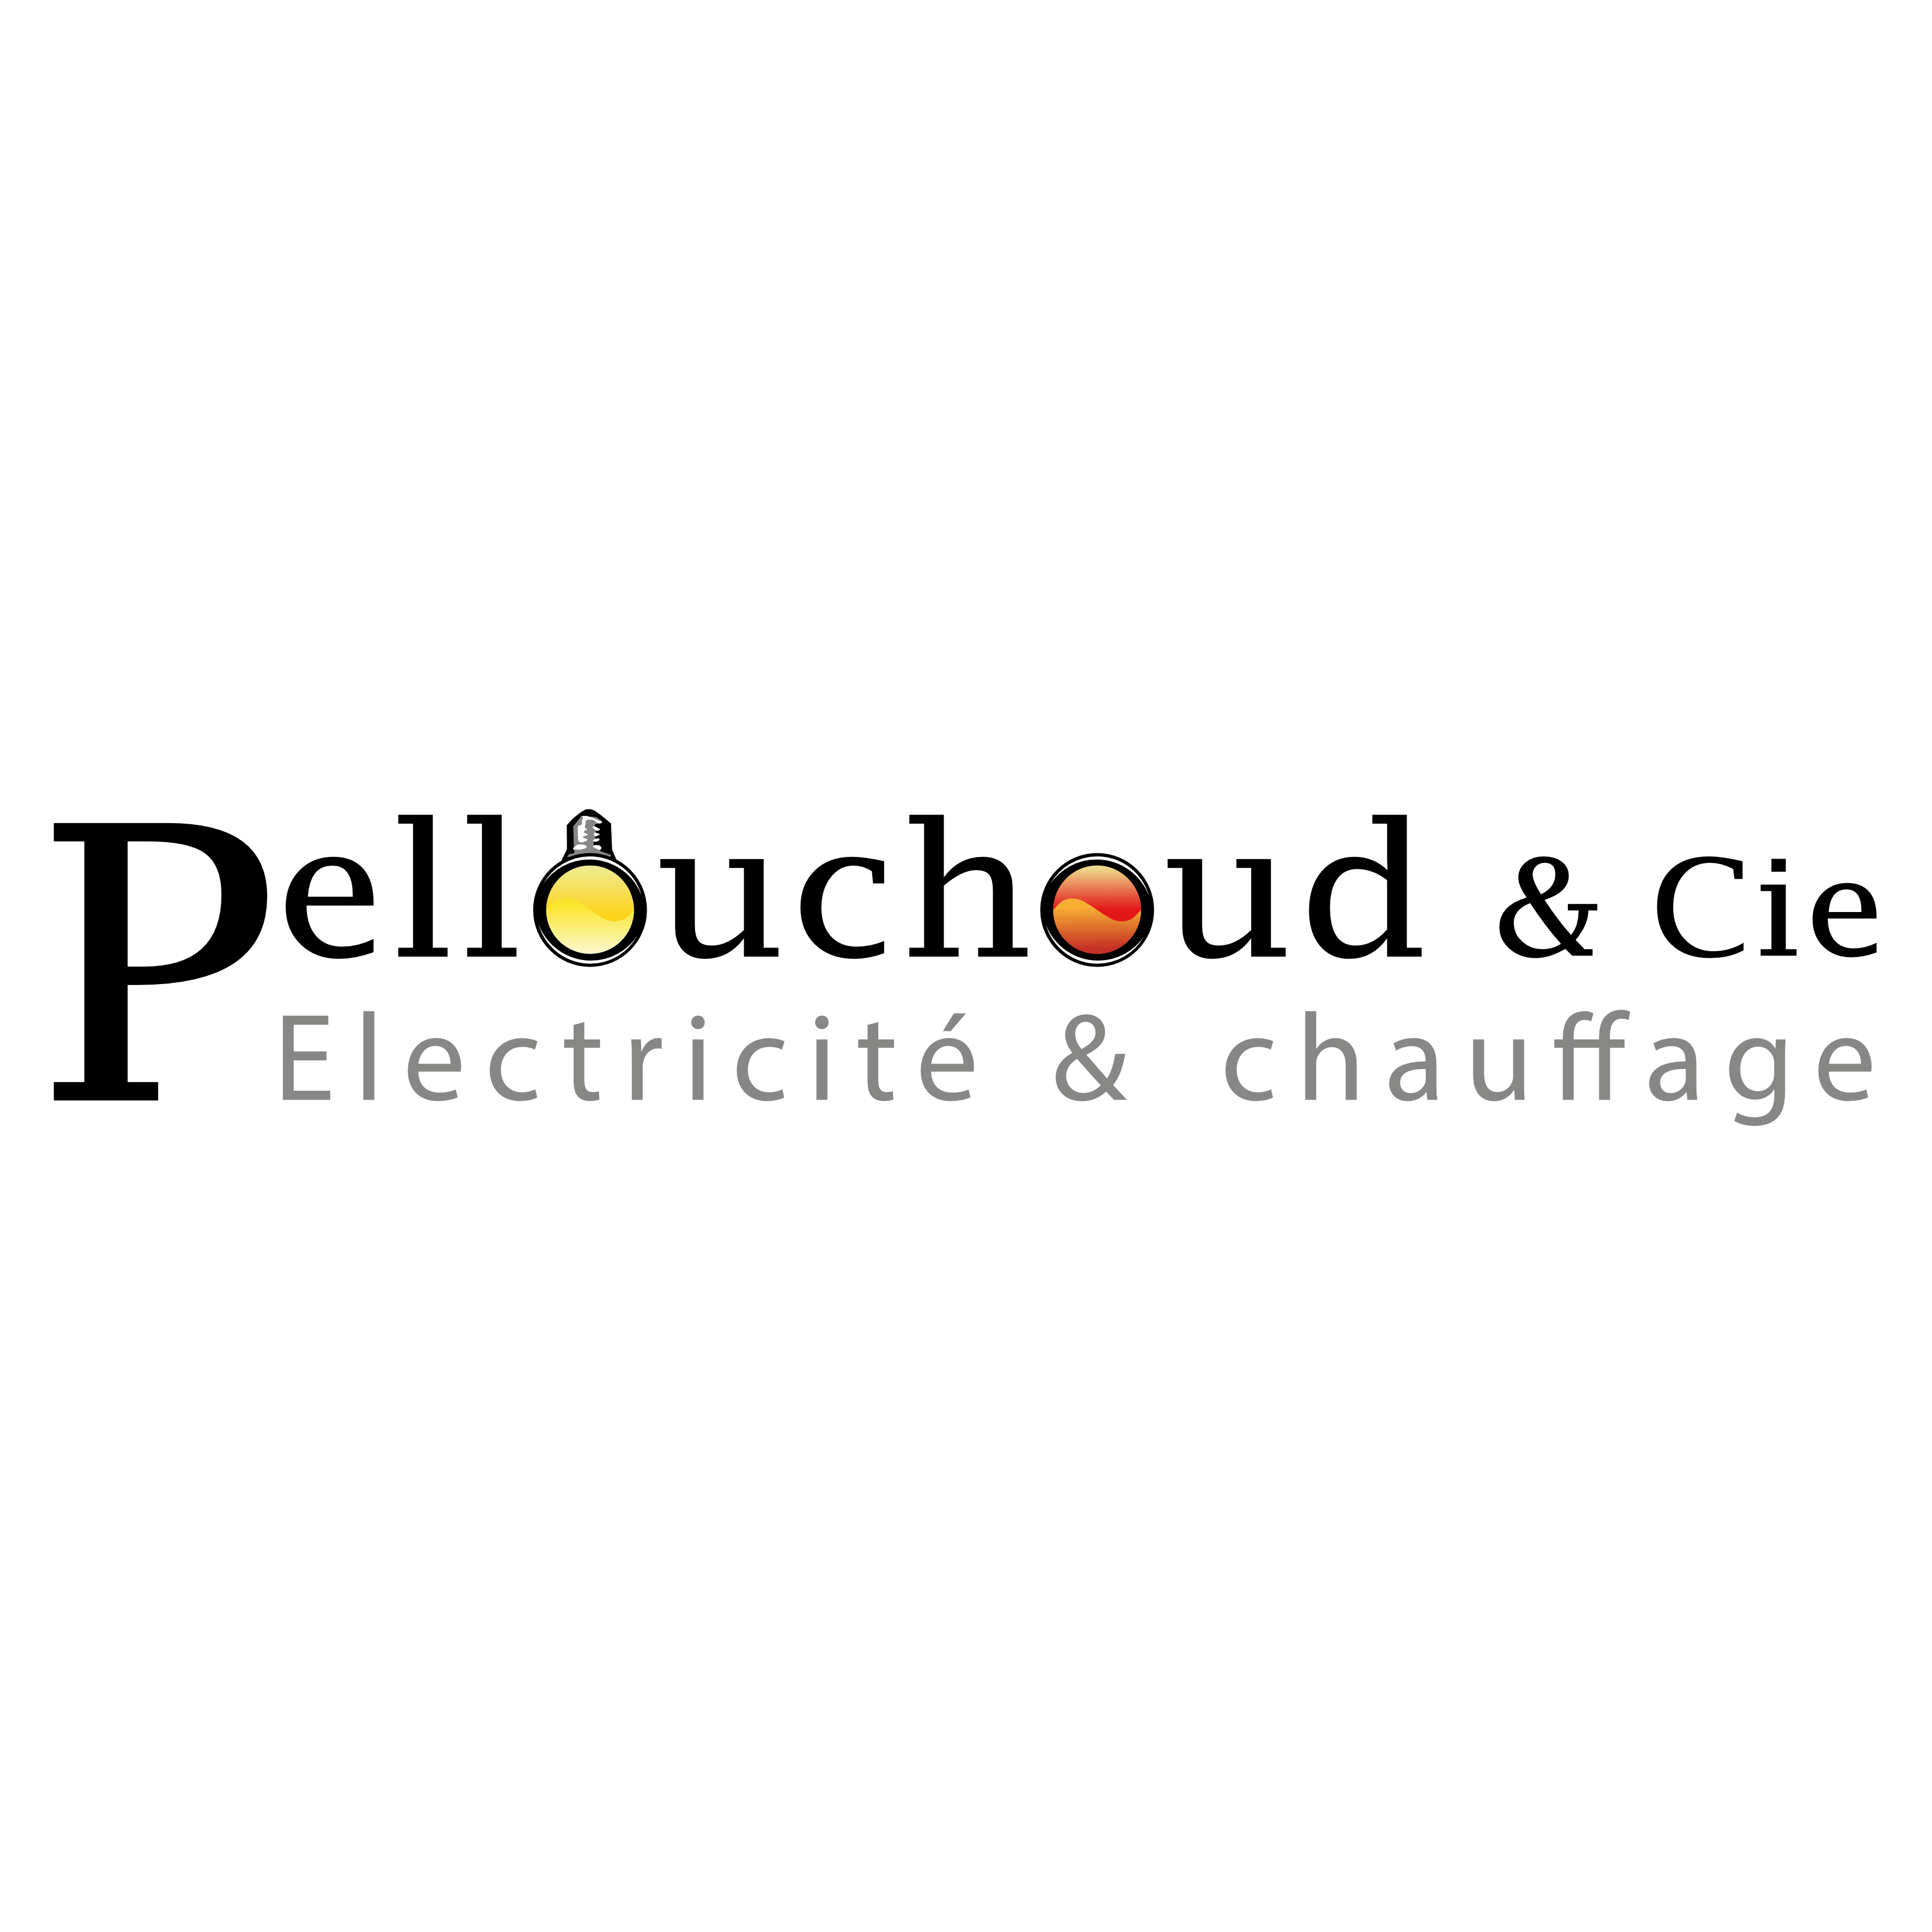 Pellouchoud & Cie Electricité - Chauffage Logo